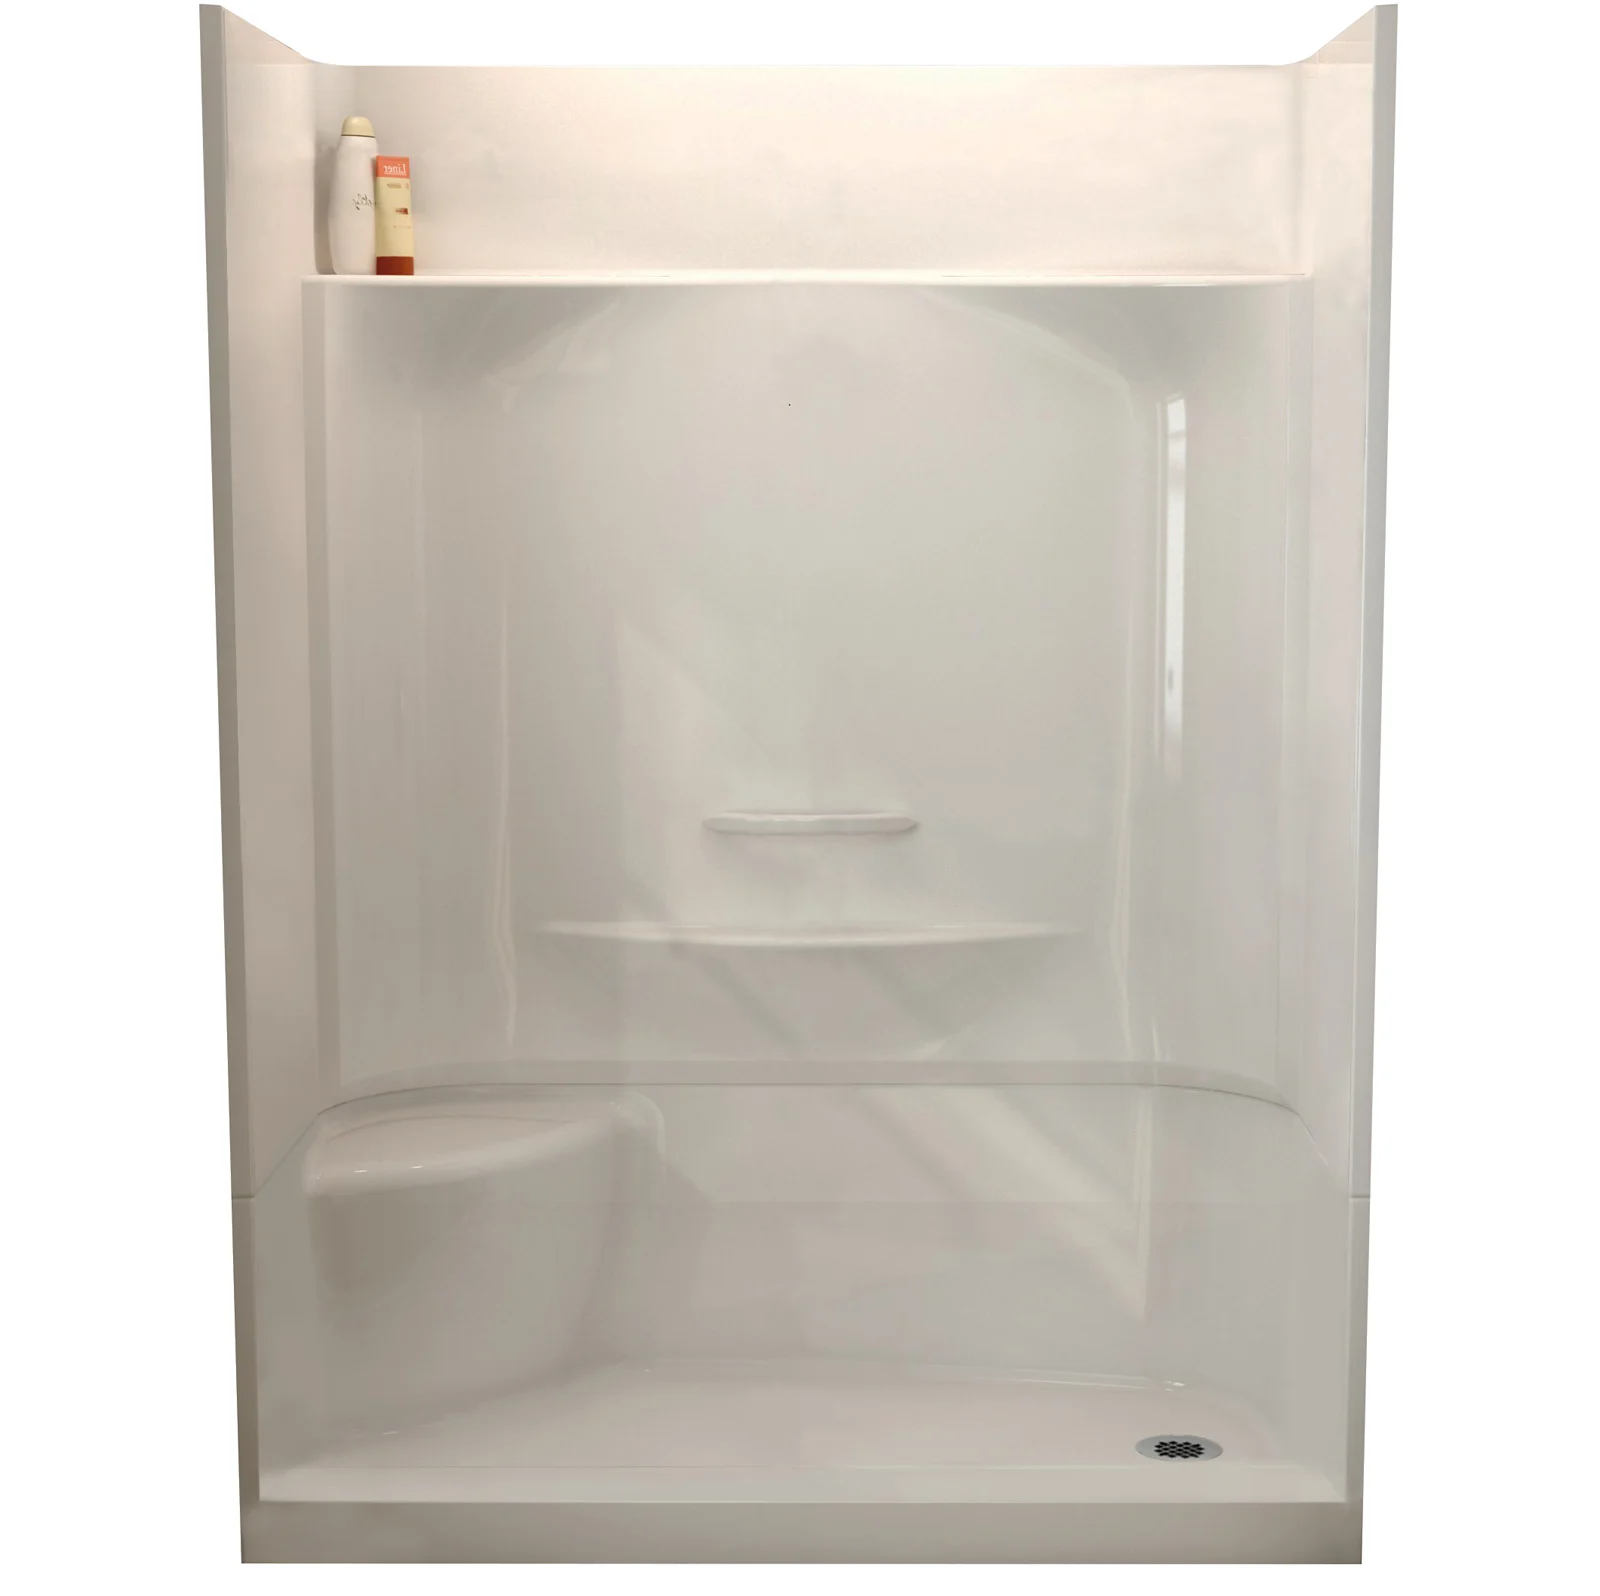 Une cabine de douche en fibre de verre